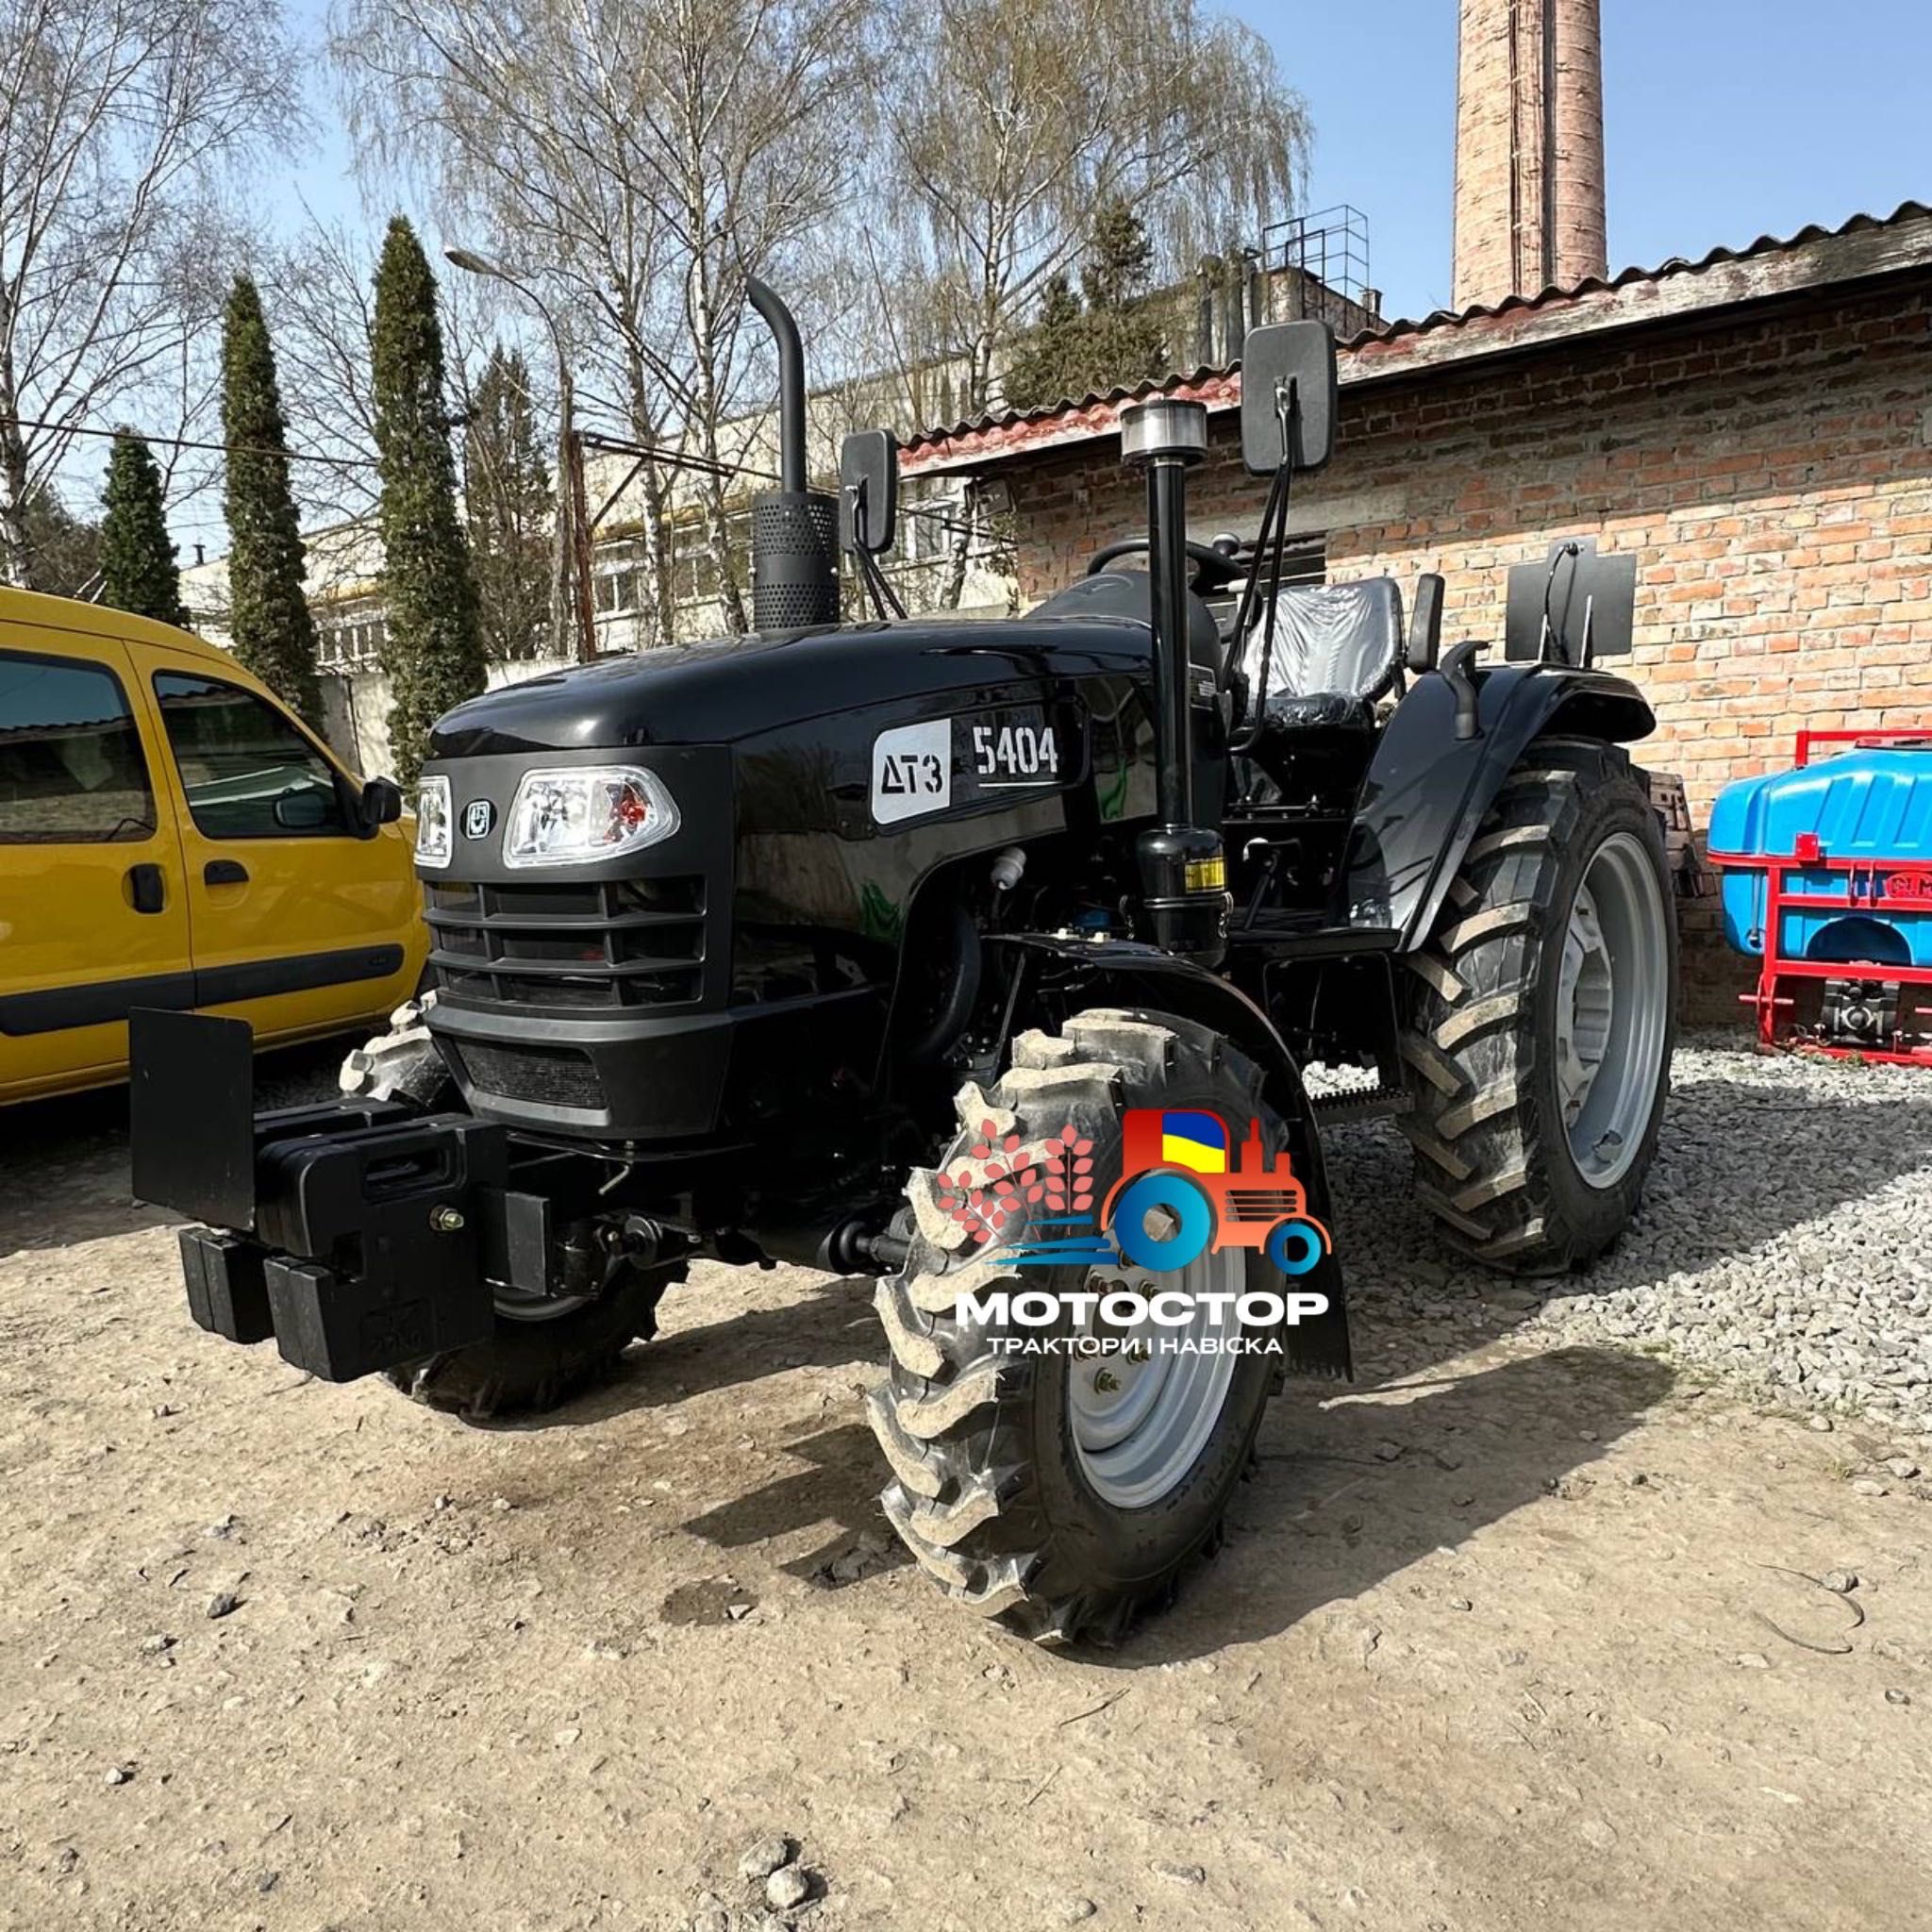 Новий мінітрактор 40 к.с. ДТЗ 5404 міні трактор гарантія 3р доставка